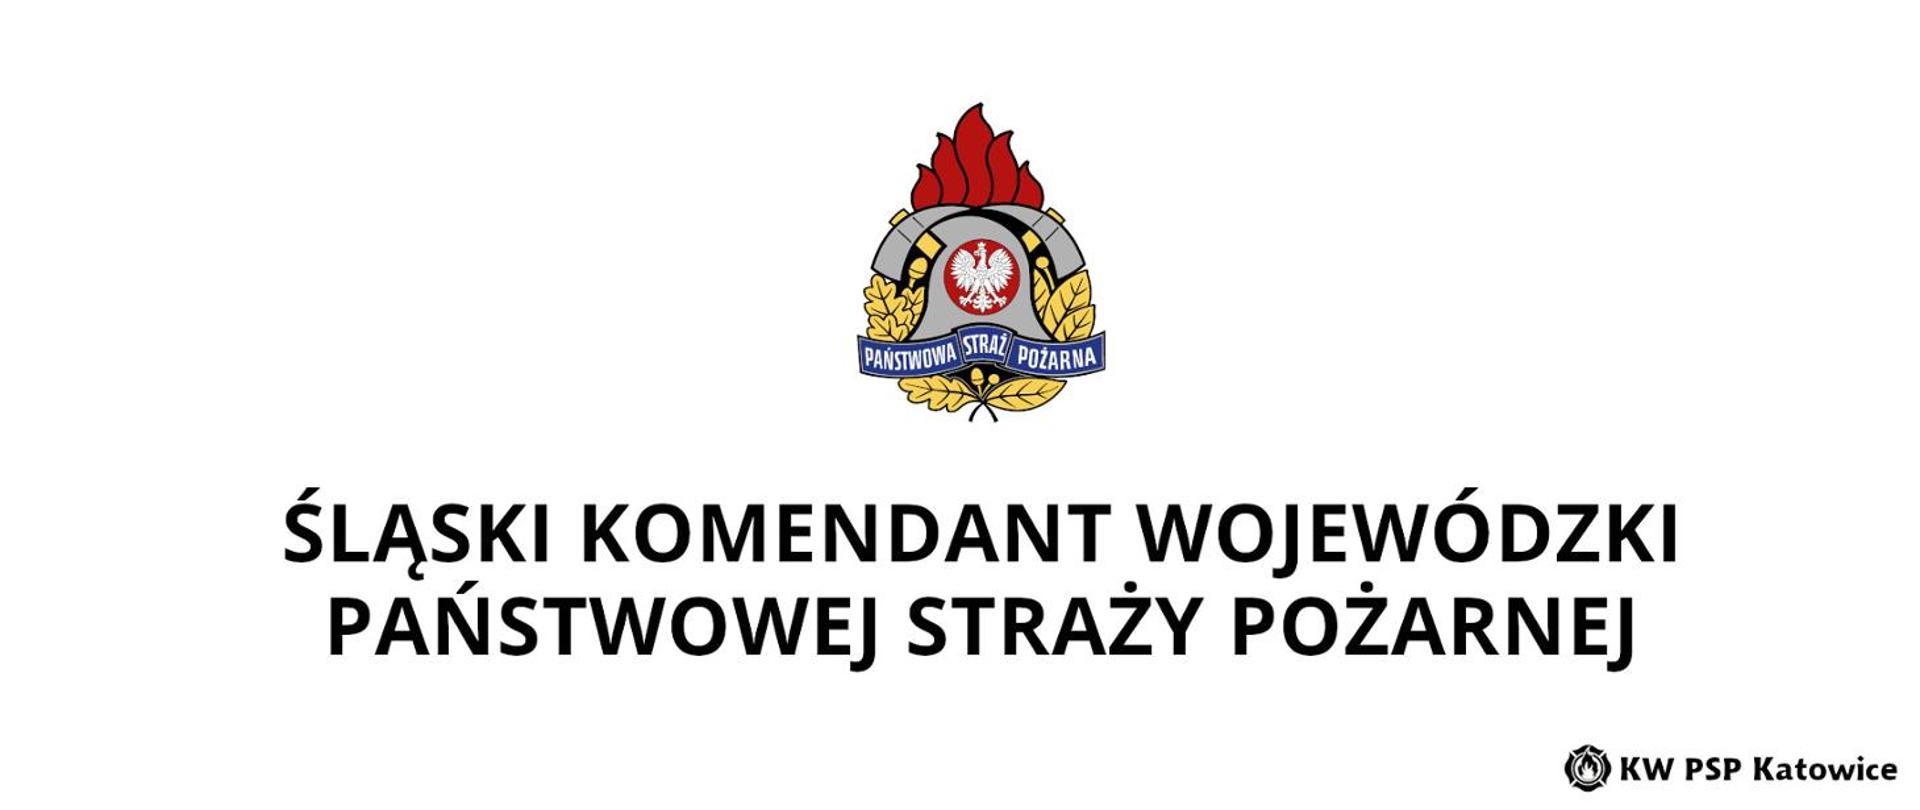 U góry logo Państwowej Straży Pożarnej, poniżej napis "Śląski Komendant Wojewódzki Państwowej Straży Pożarnej" - wyśrodkowane.